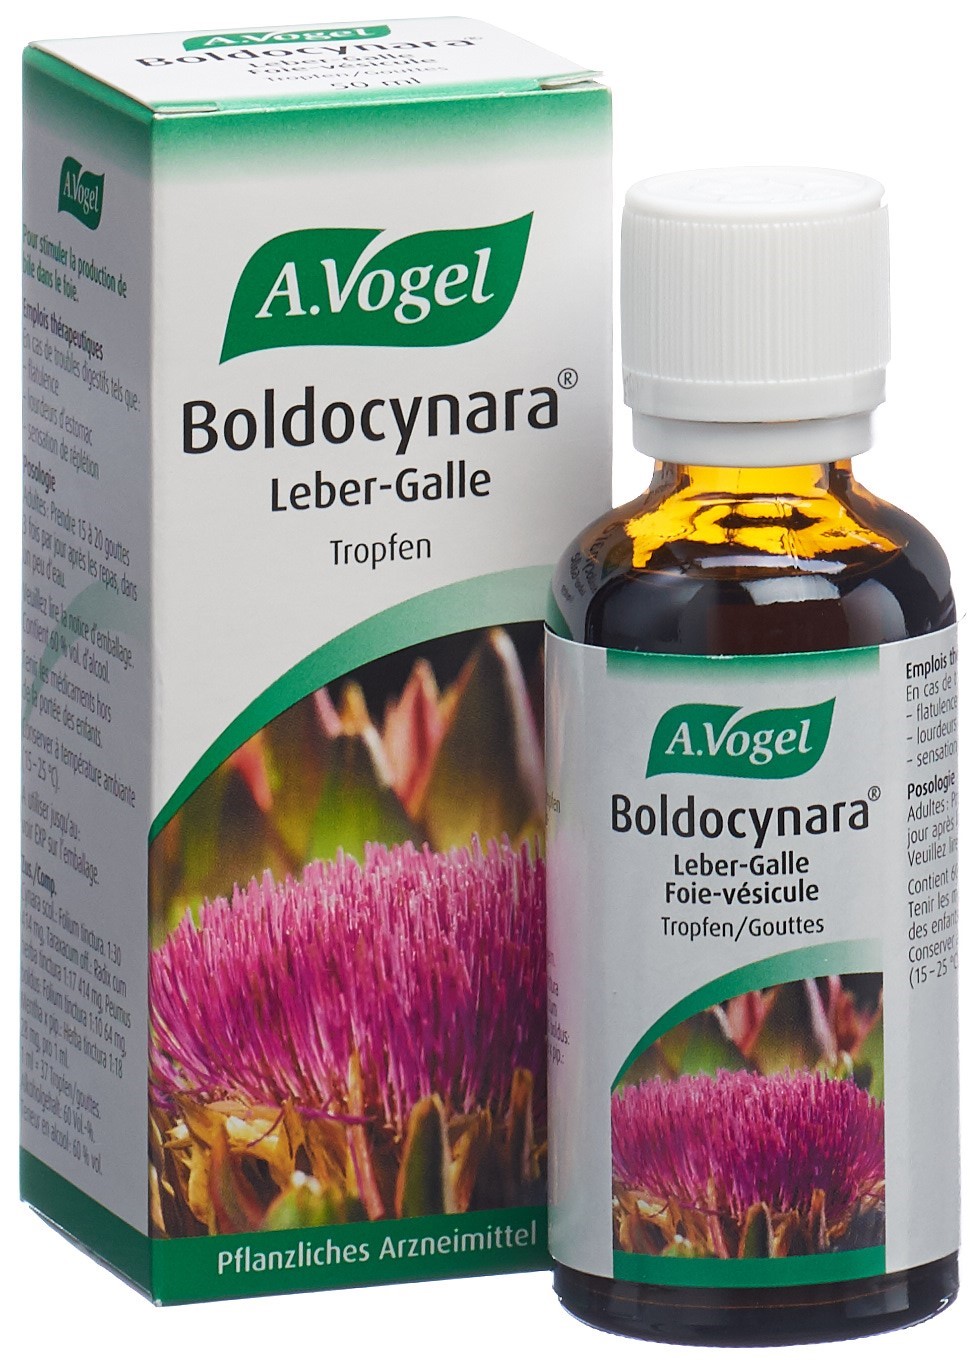 VOGEL Boldocynara Leber-Galle Tropfen Fl 50 ml